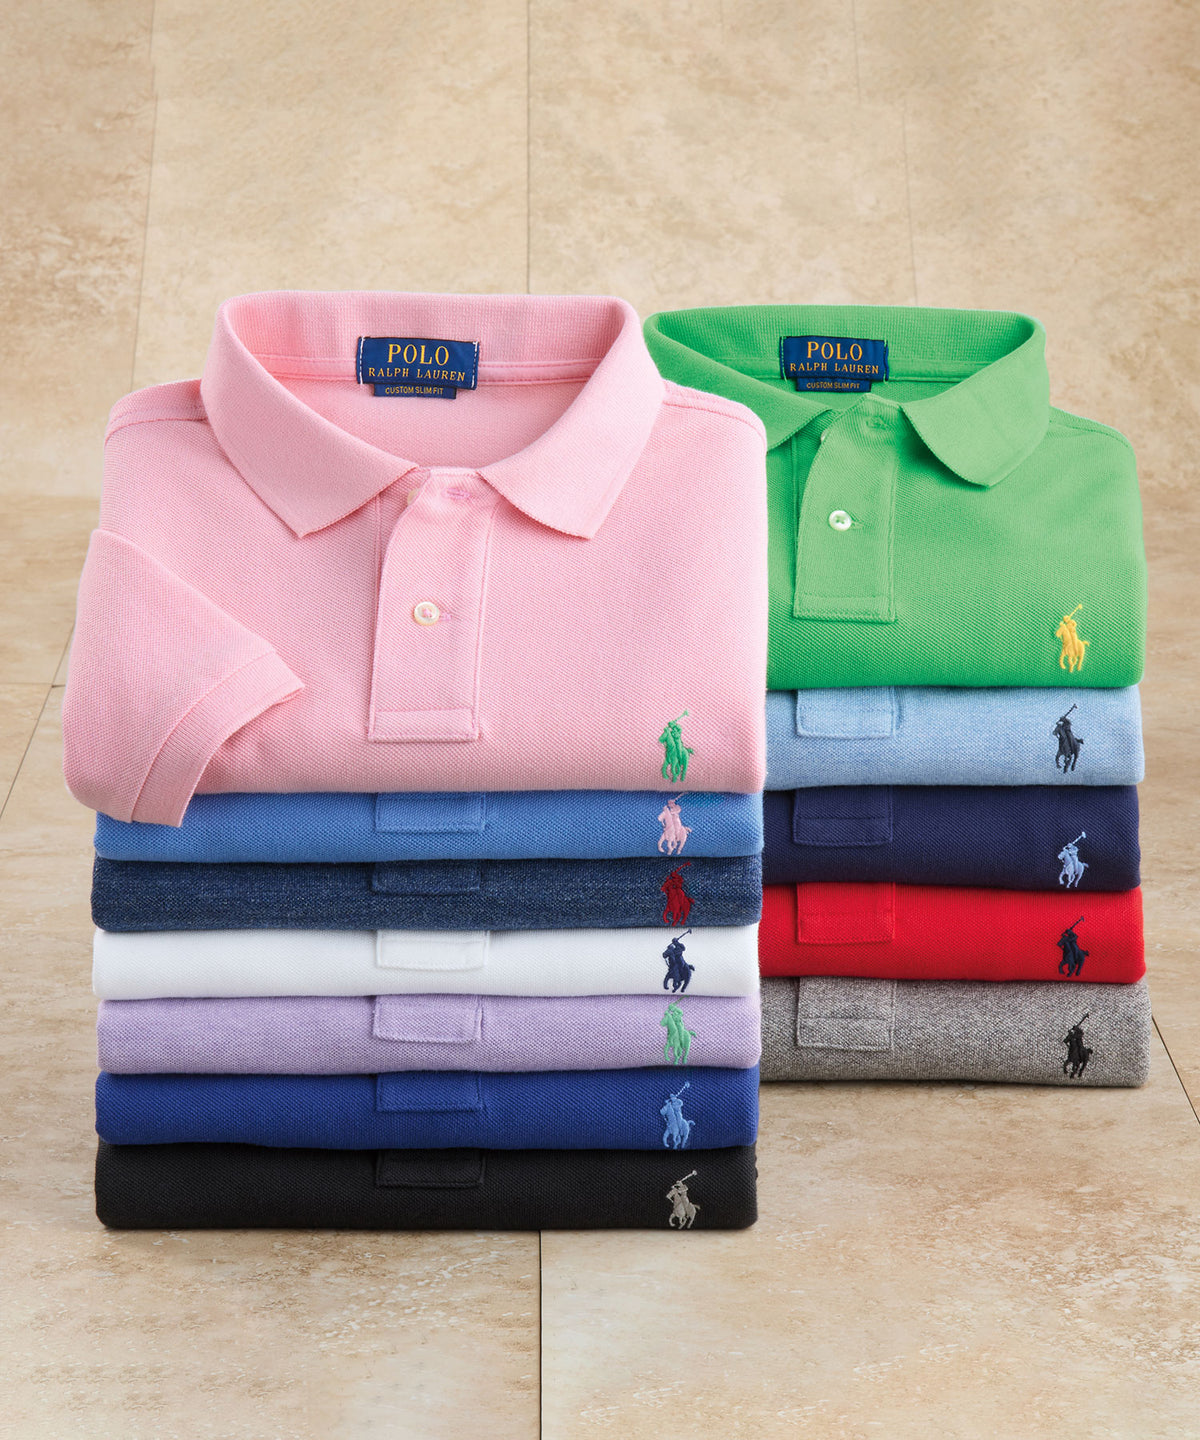 The Polo Shirt, Ralph Lauren